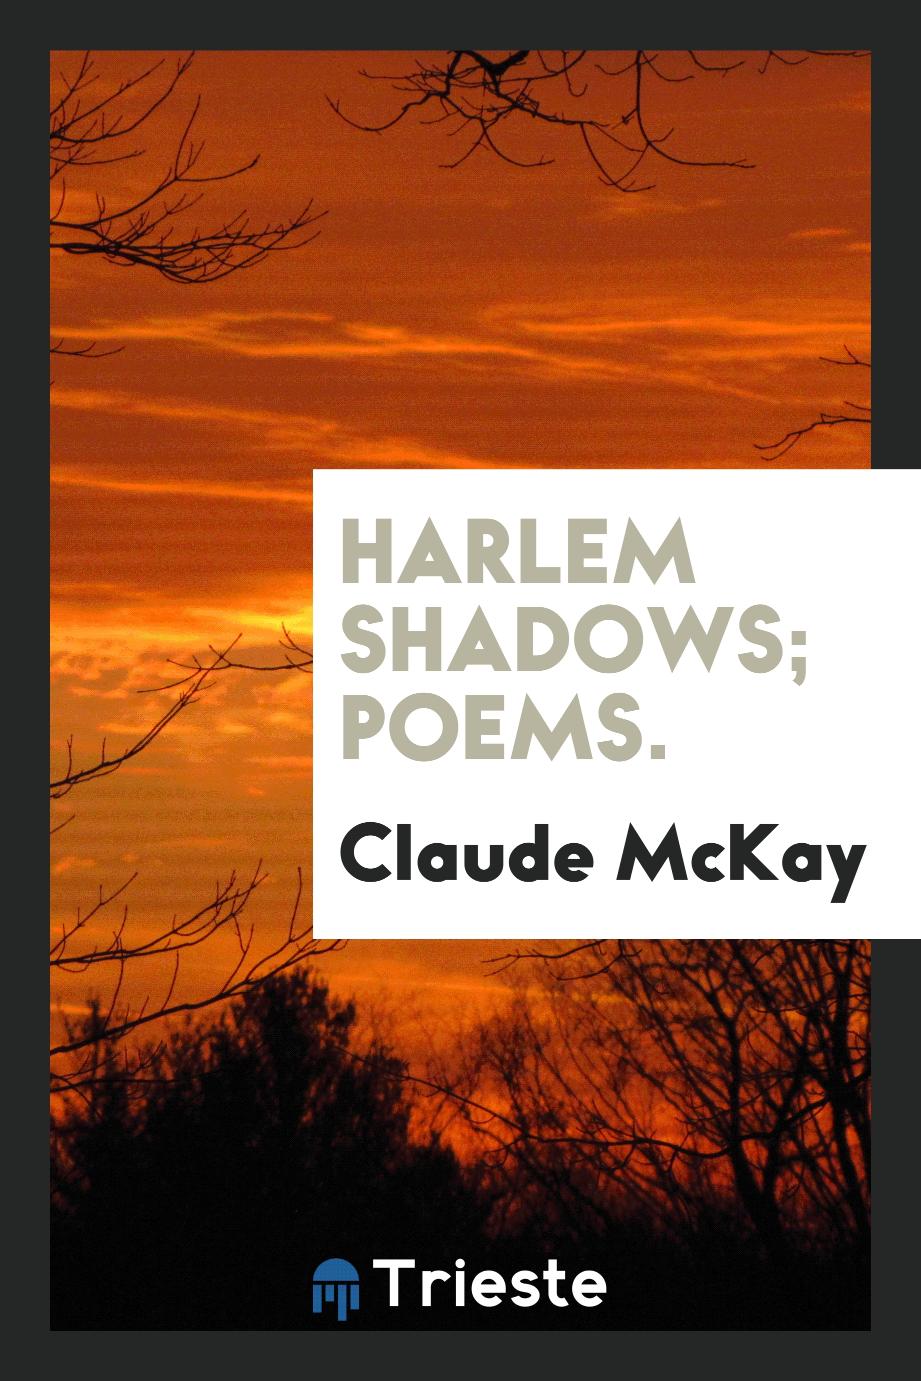 Harlem shadows; poems.